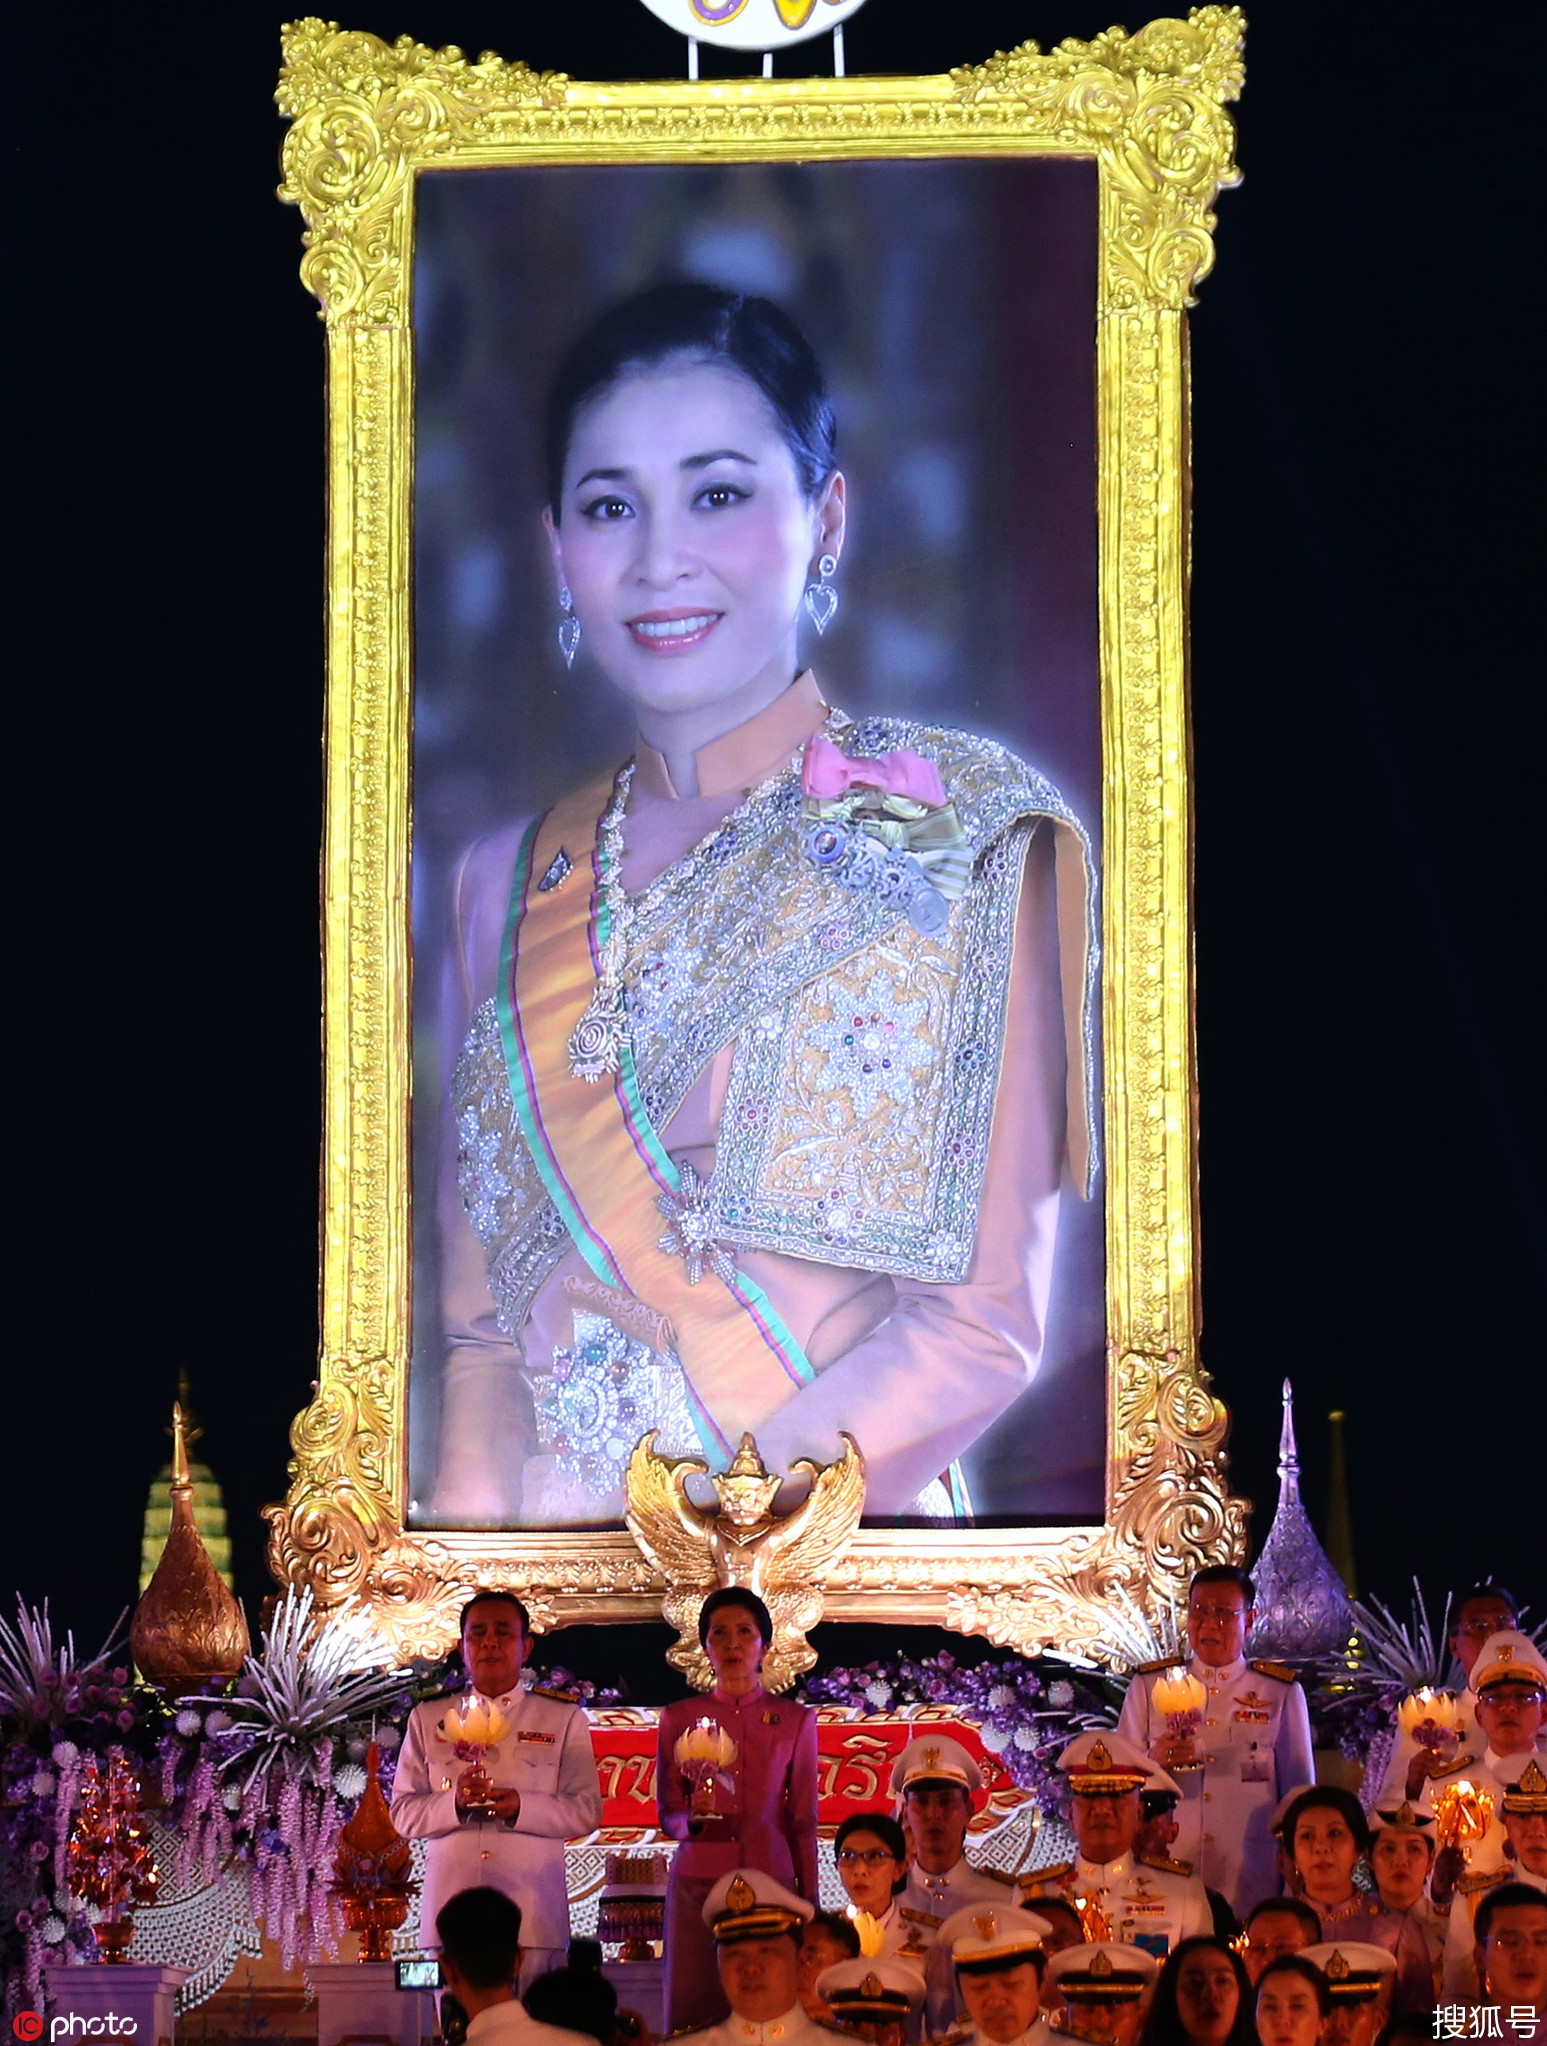 泰国新王后苏提达41岁生日 曼谷举行盛大庆祝活动